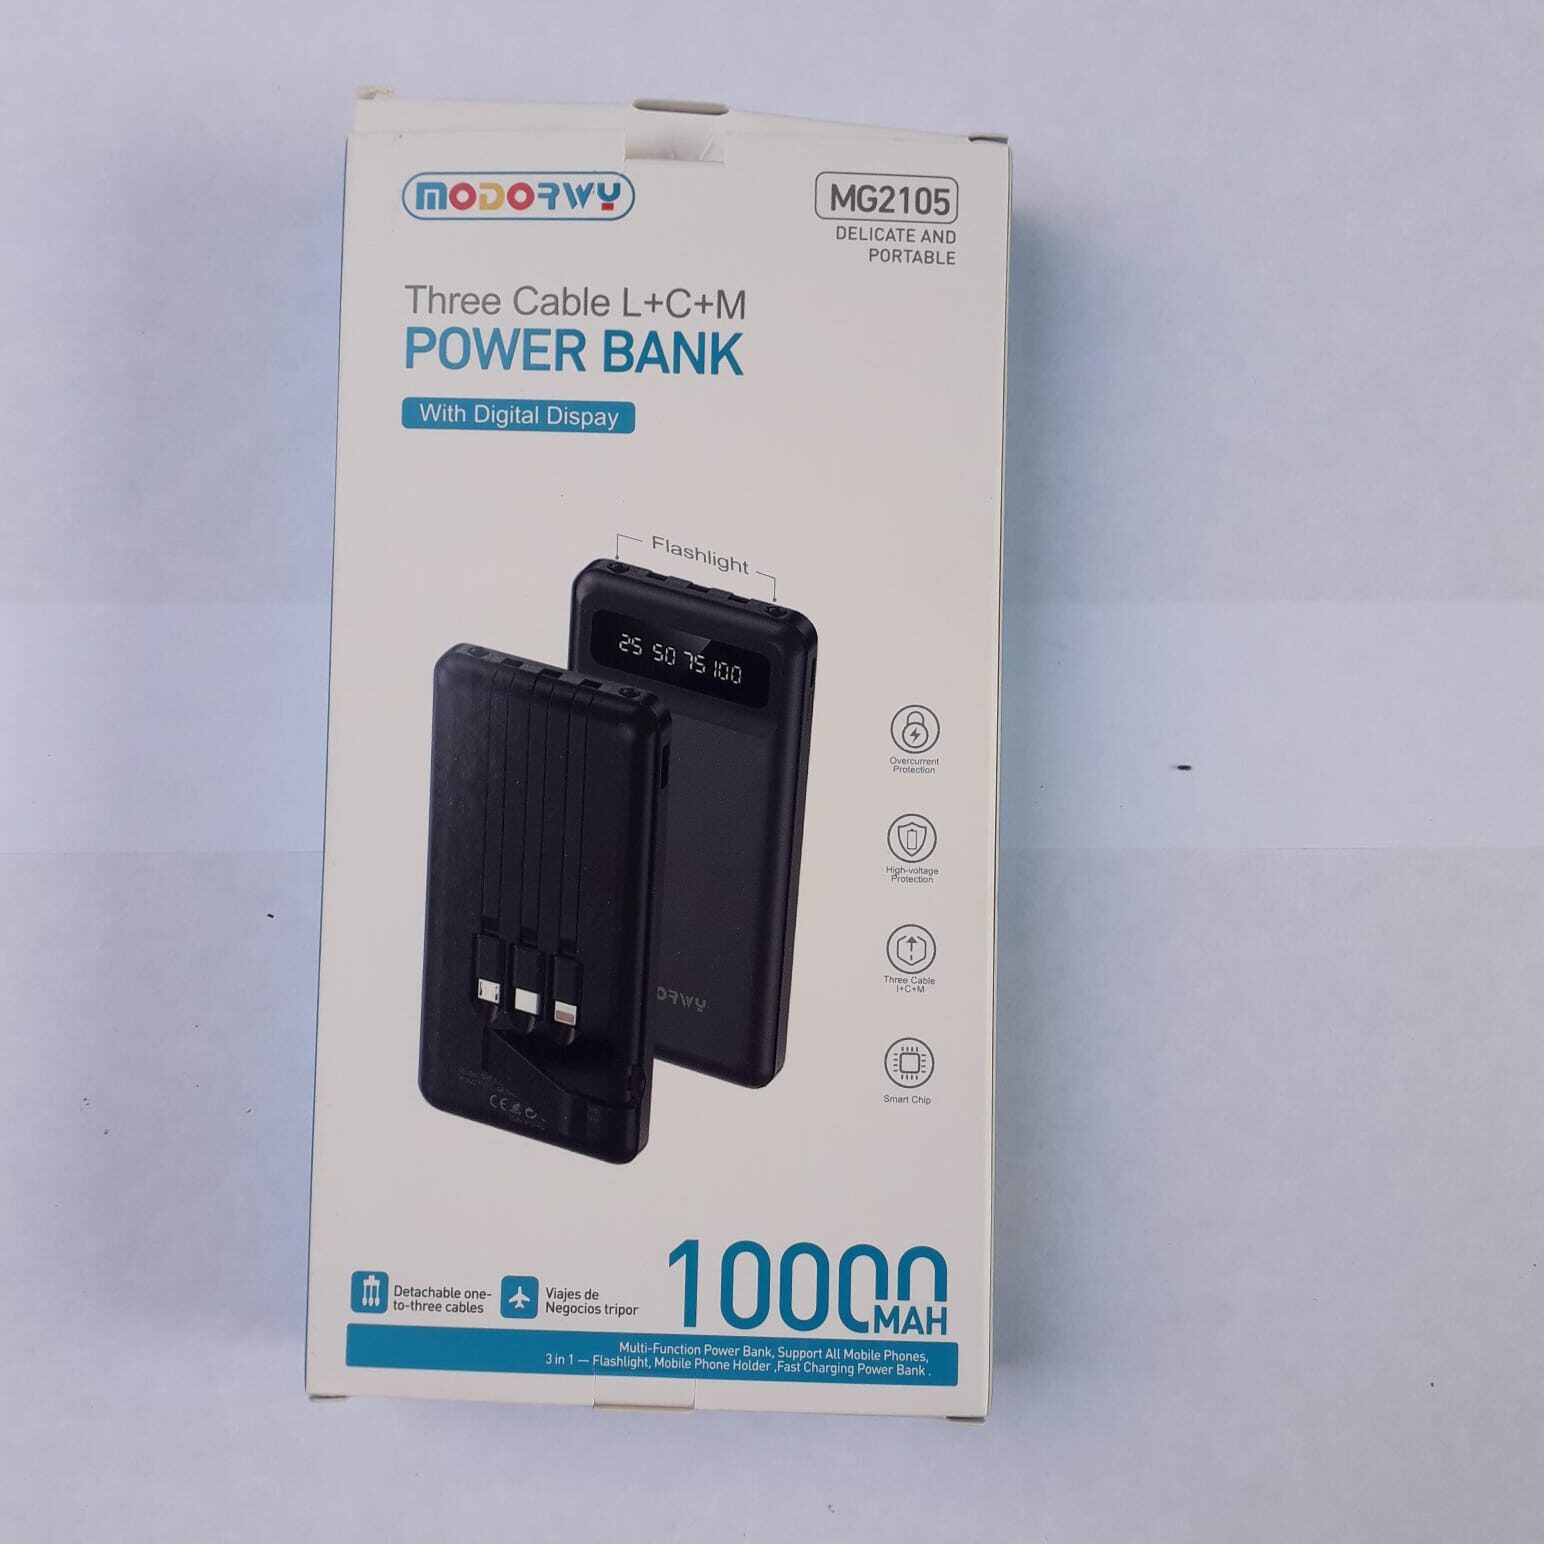 Mini batería externa / Power Bank magnético portátil para teléfono